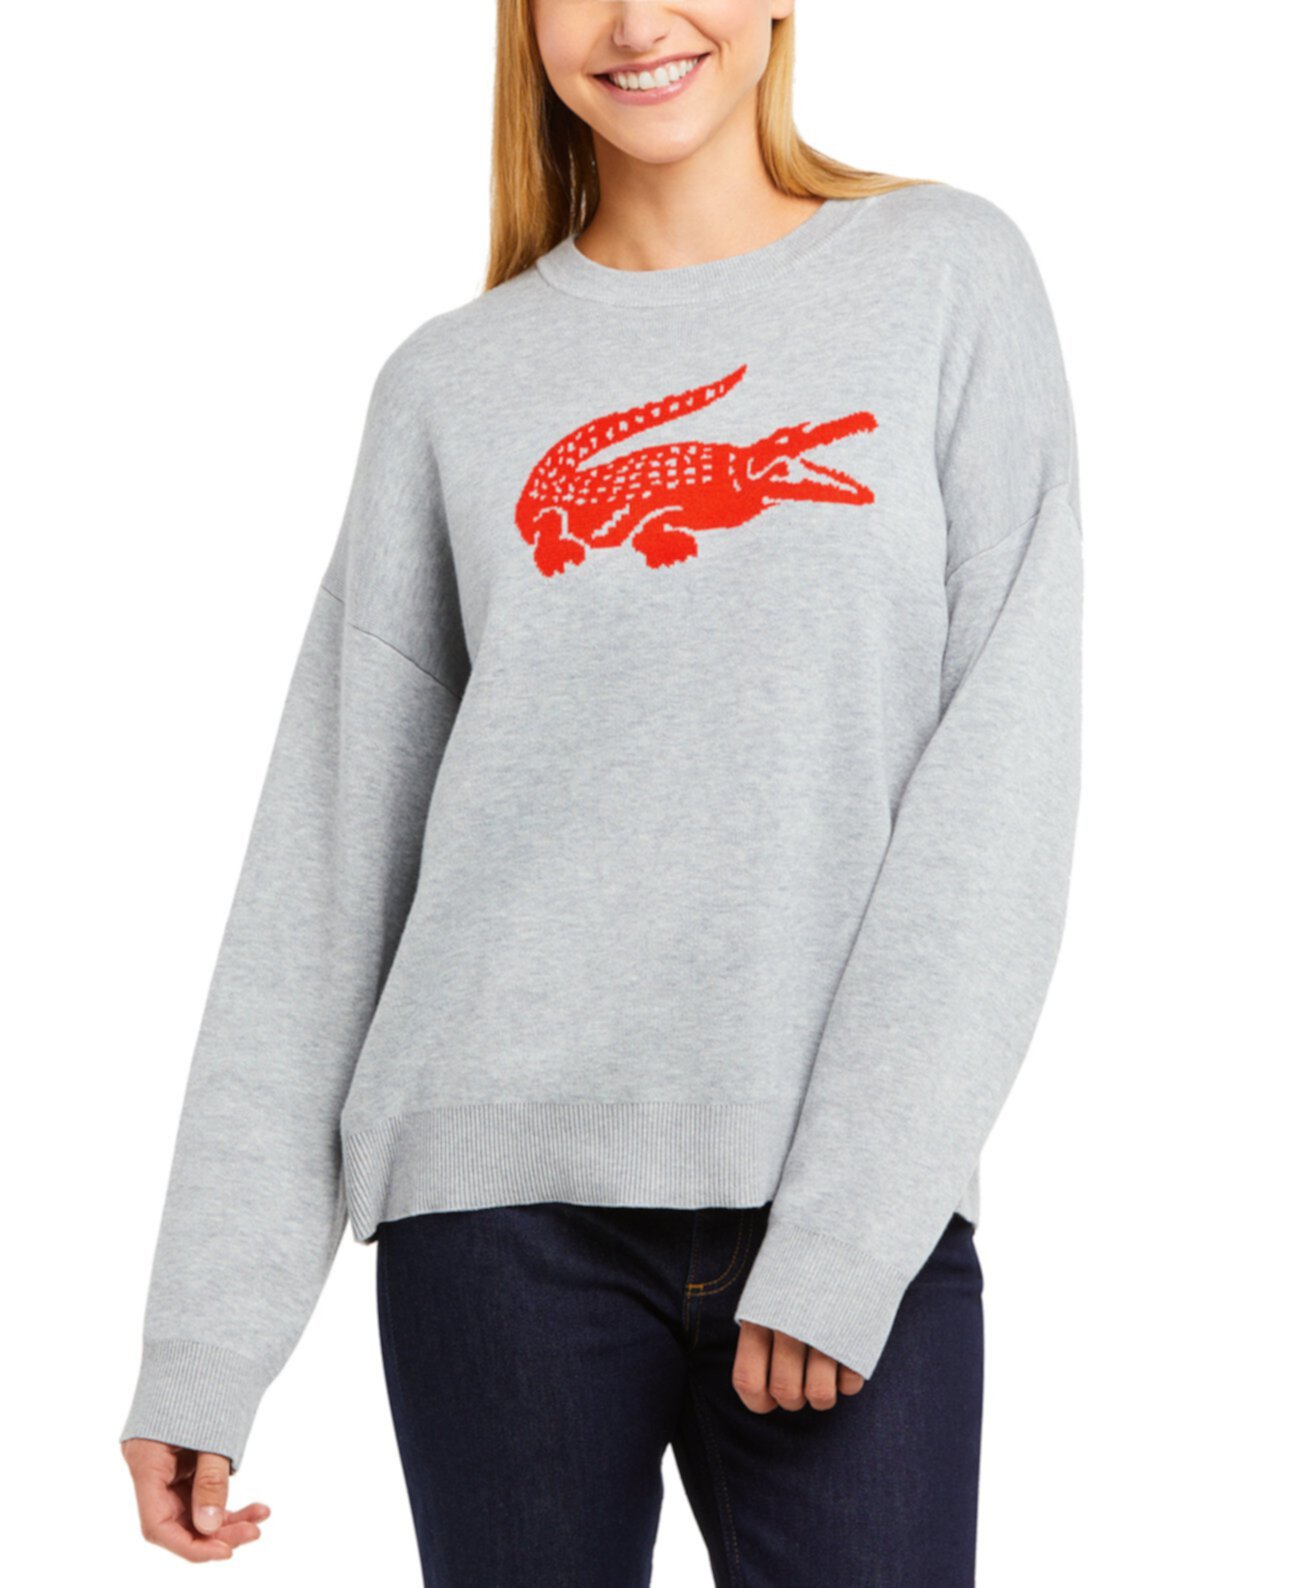 Классический женский жаккардовый свитер с логотипом Fit Lacoste